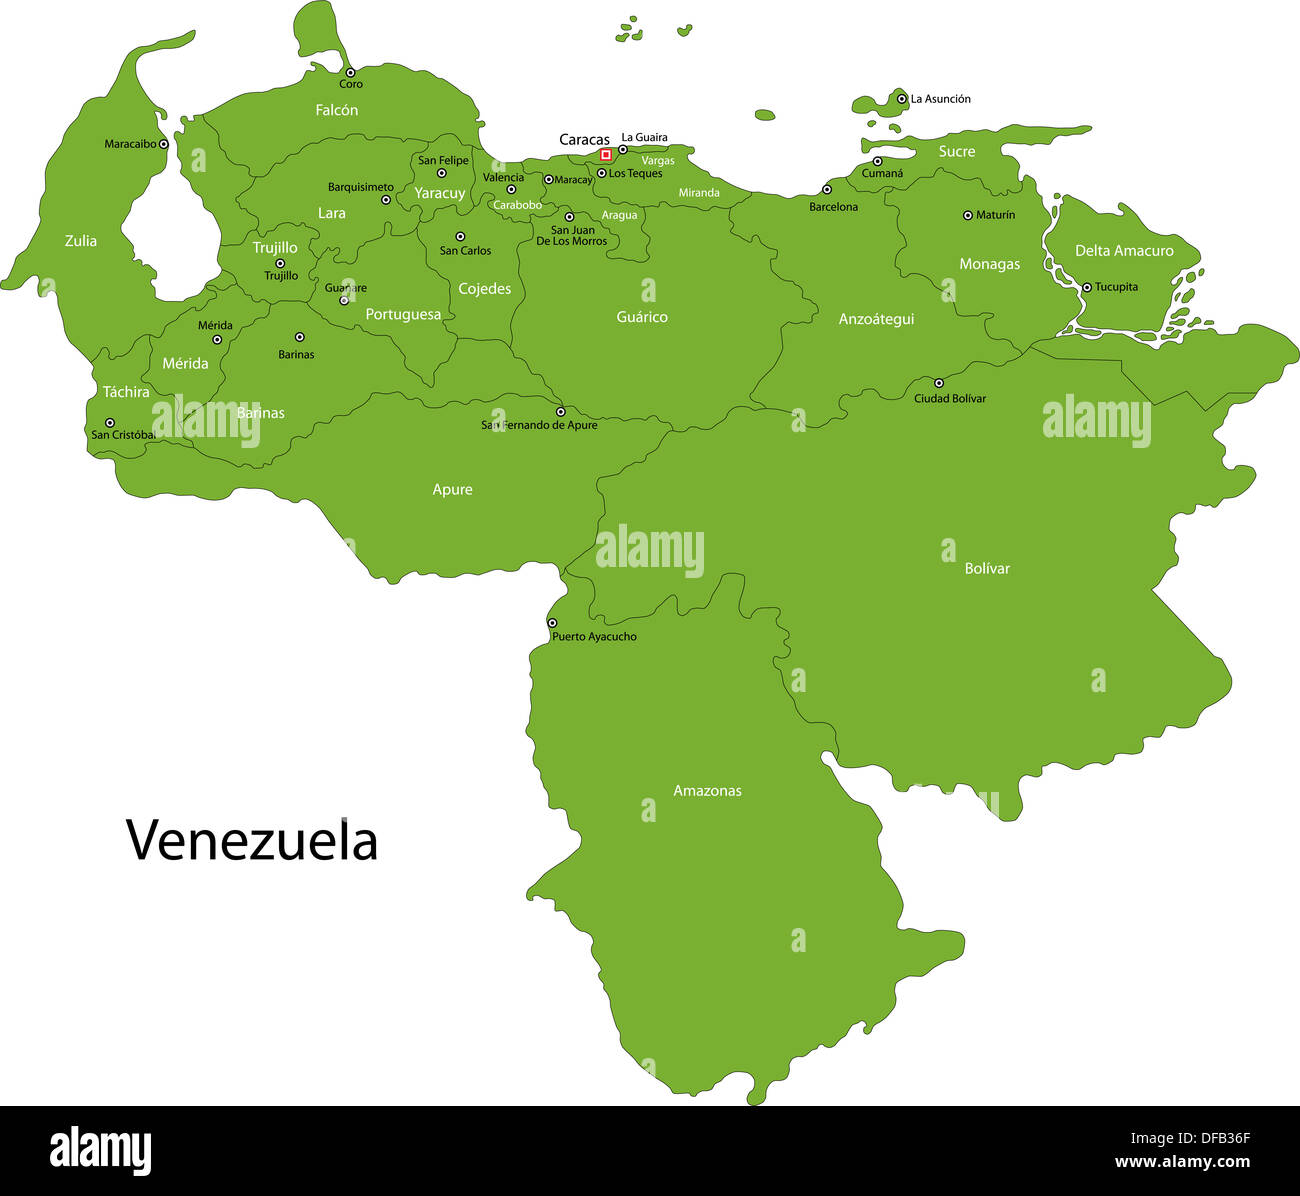 Green Venezuela map Stock Photo